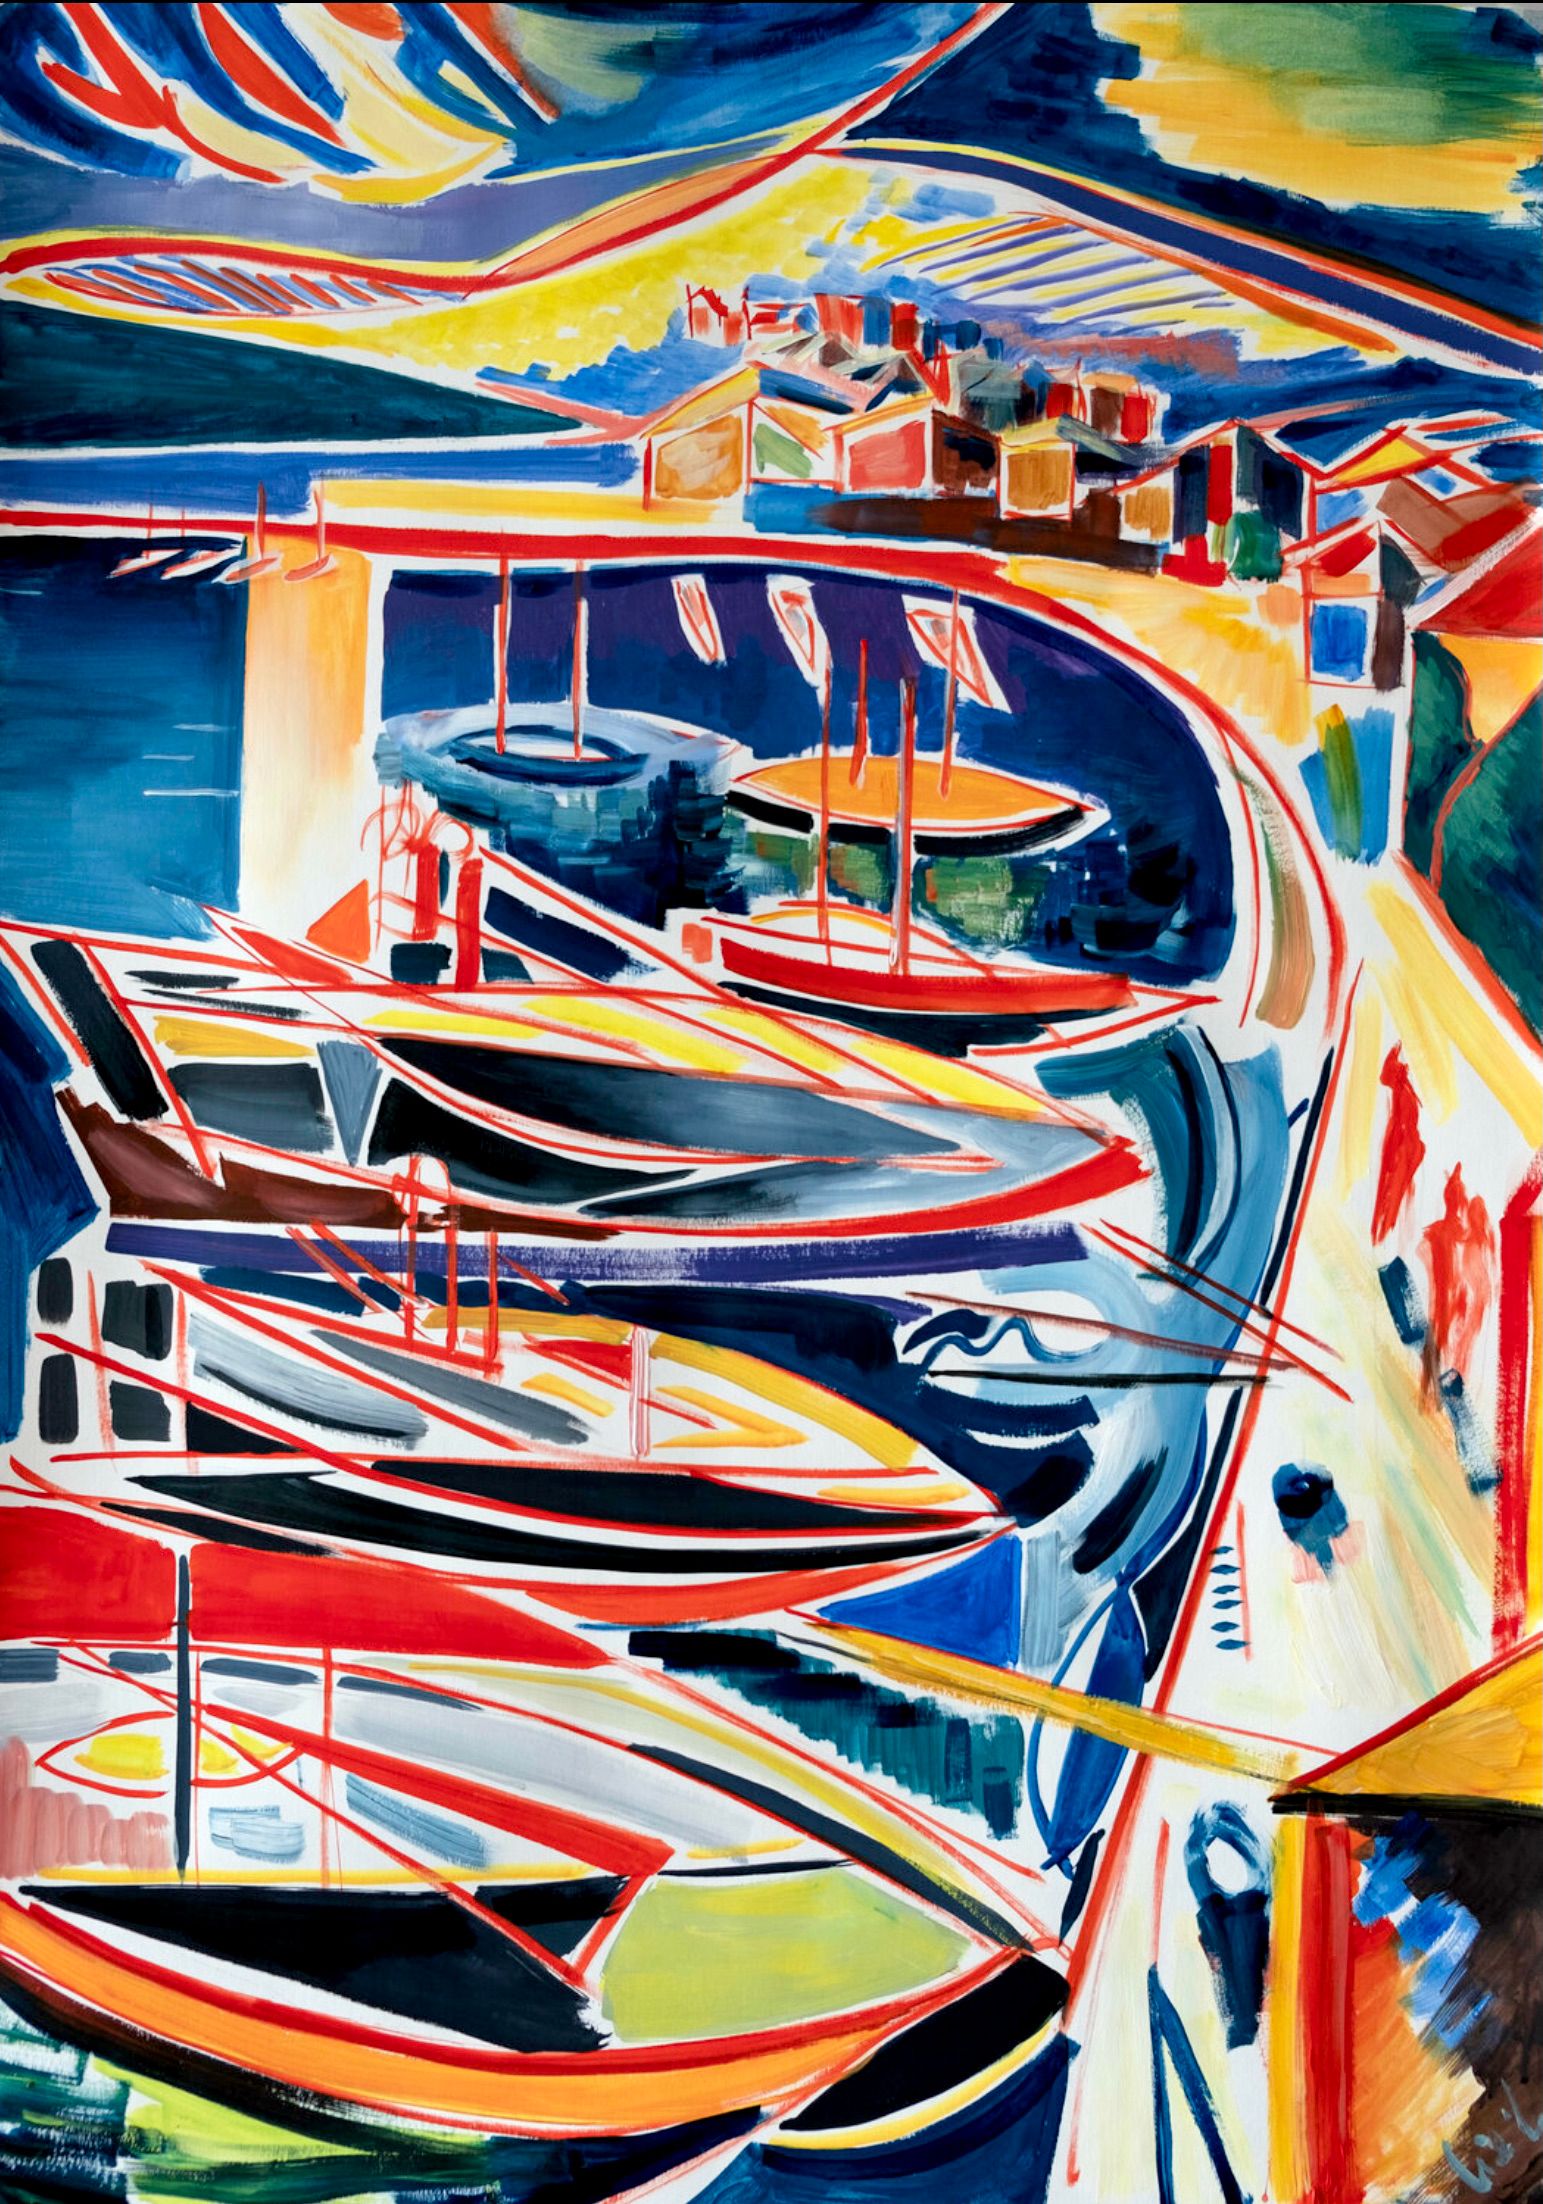 MECESLA Maciej Cieśla, "Portofino Italia in forme astratte", dipinto astratto colorato di un porto italiano con imbarcazioni